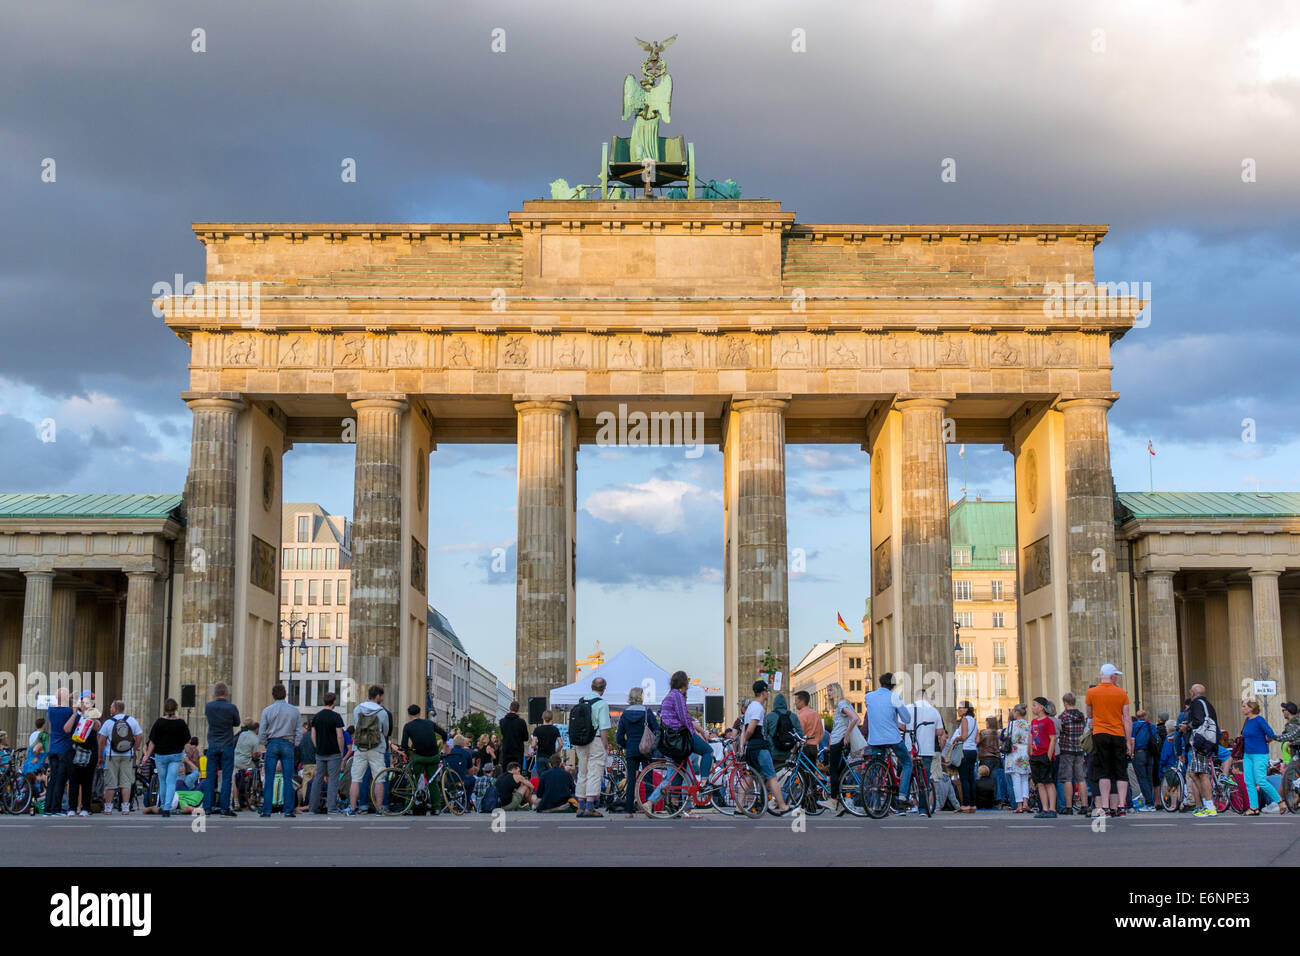 Allemagne : Porte de Brandebourg de Berlin vu de l'ouest. Photo du 11 août 2014. Banque D'Images